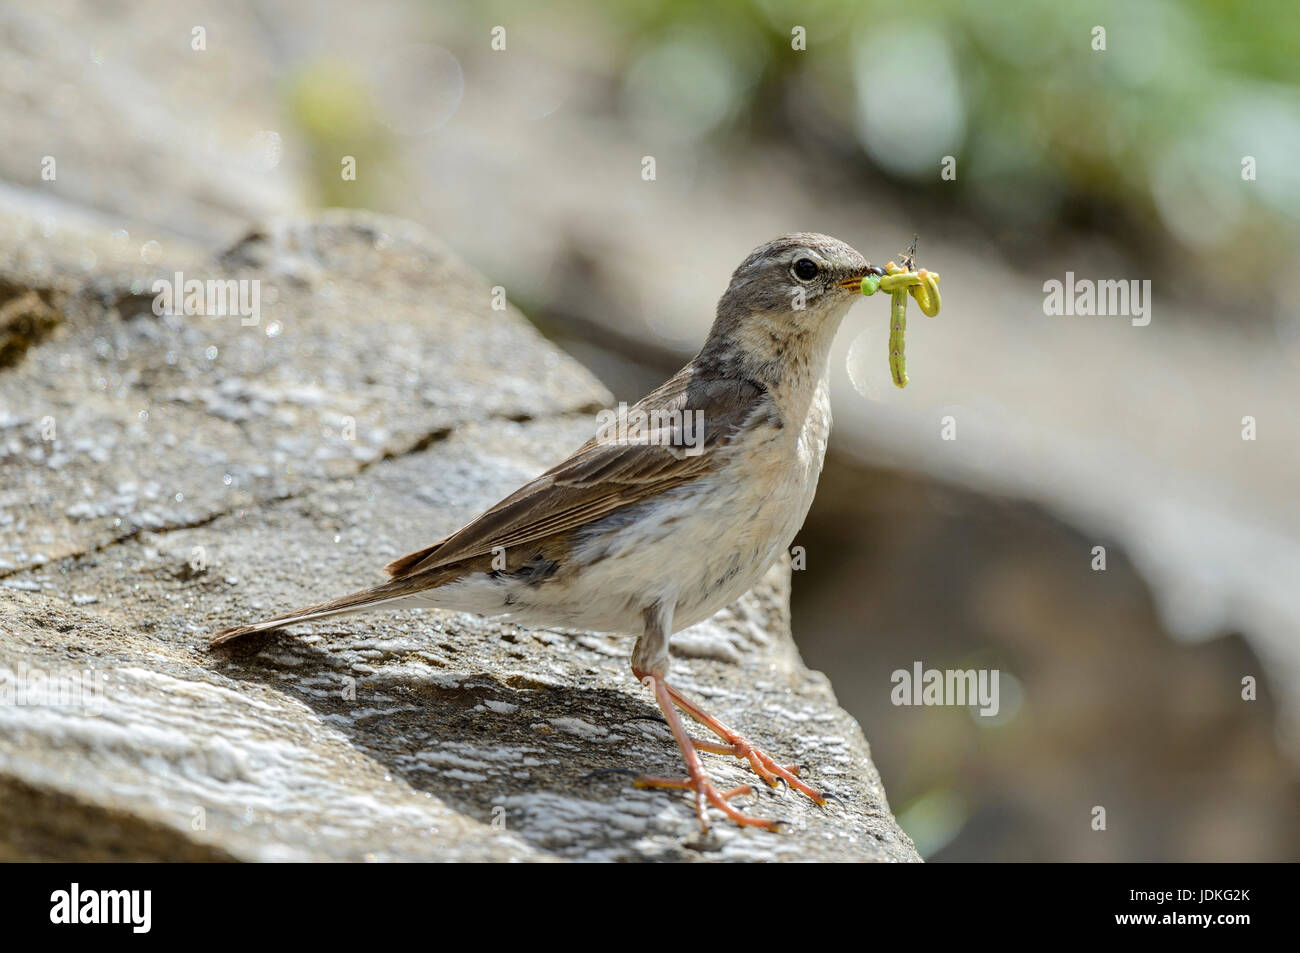 Bergpieper with feed in the beak sits on a stone, Bergpieper mit Futter im Schnabel sitzt auf einem Stein Stock Photo